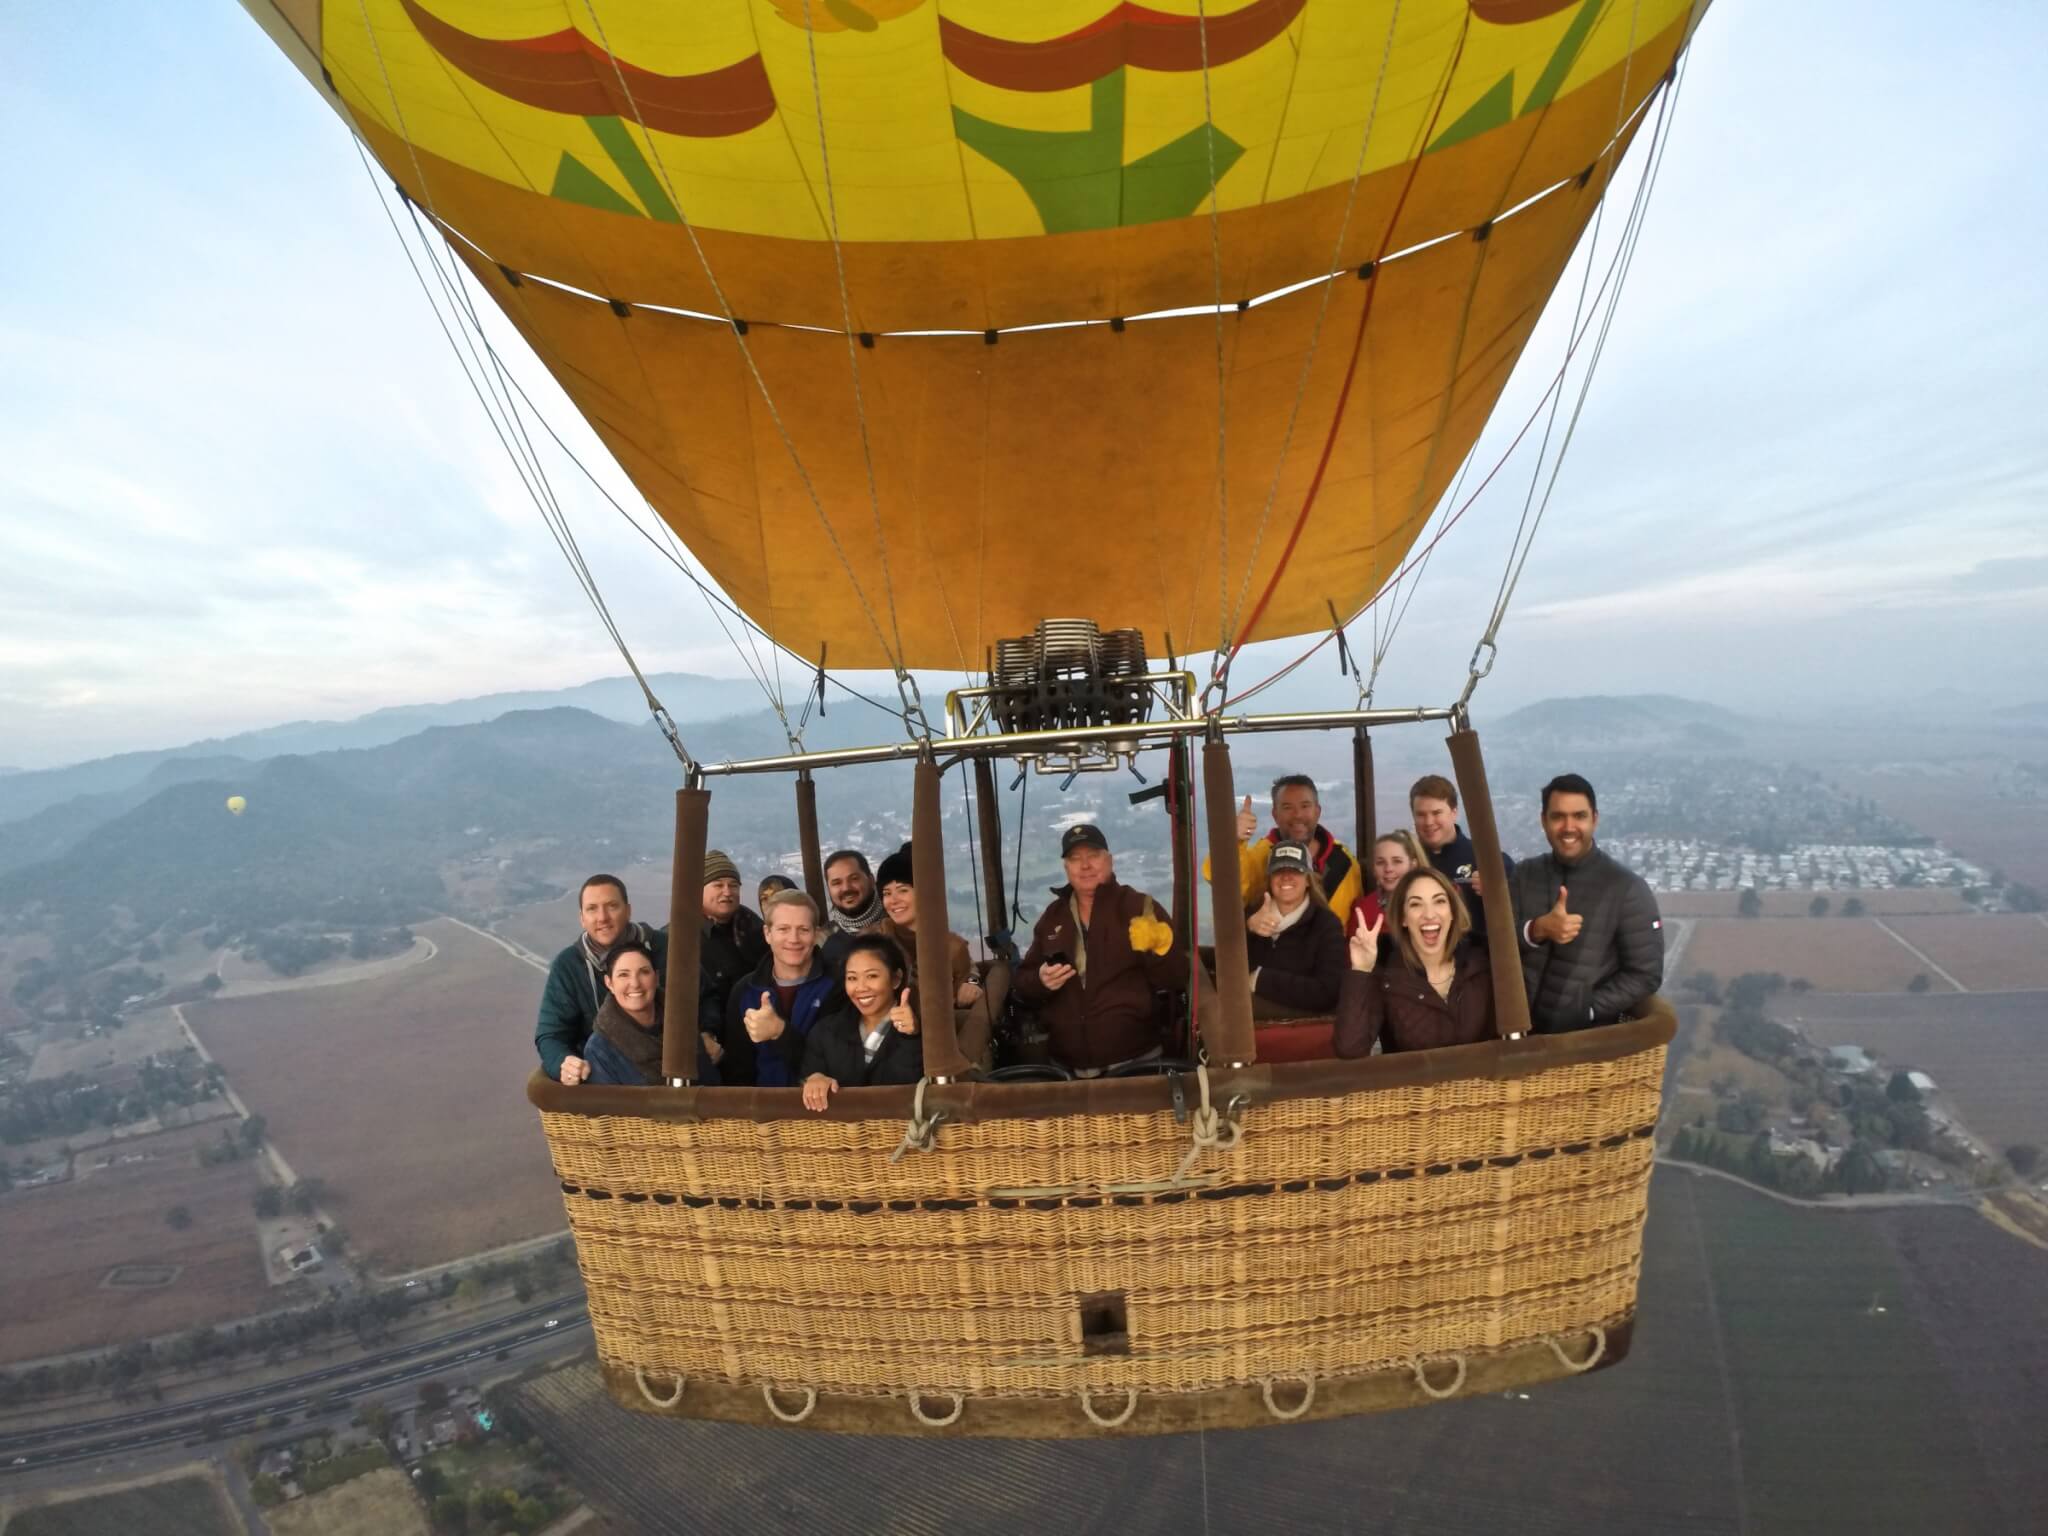 hot air balloon ride, hot air balloon, hot air balloon ride review, hot air baloon ride in napa, napa hot air balloon, things to do in napa